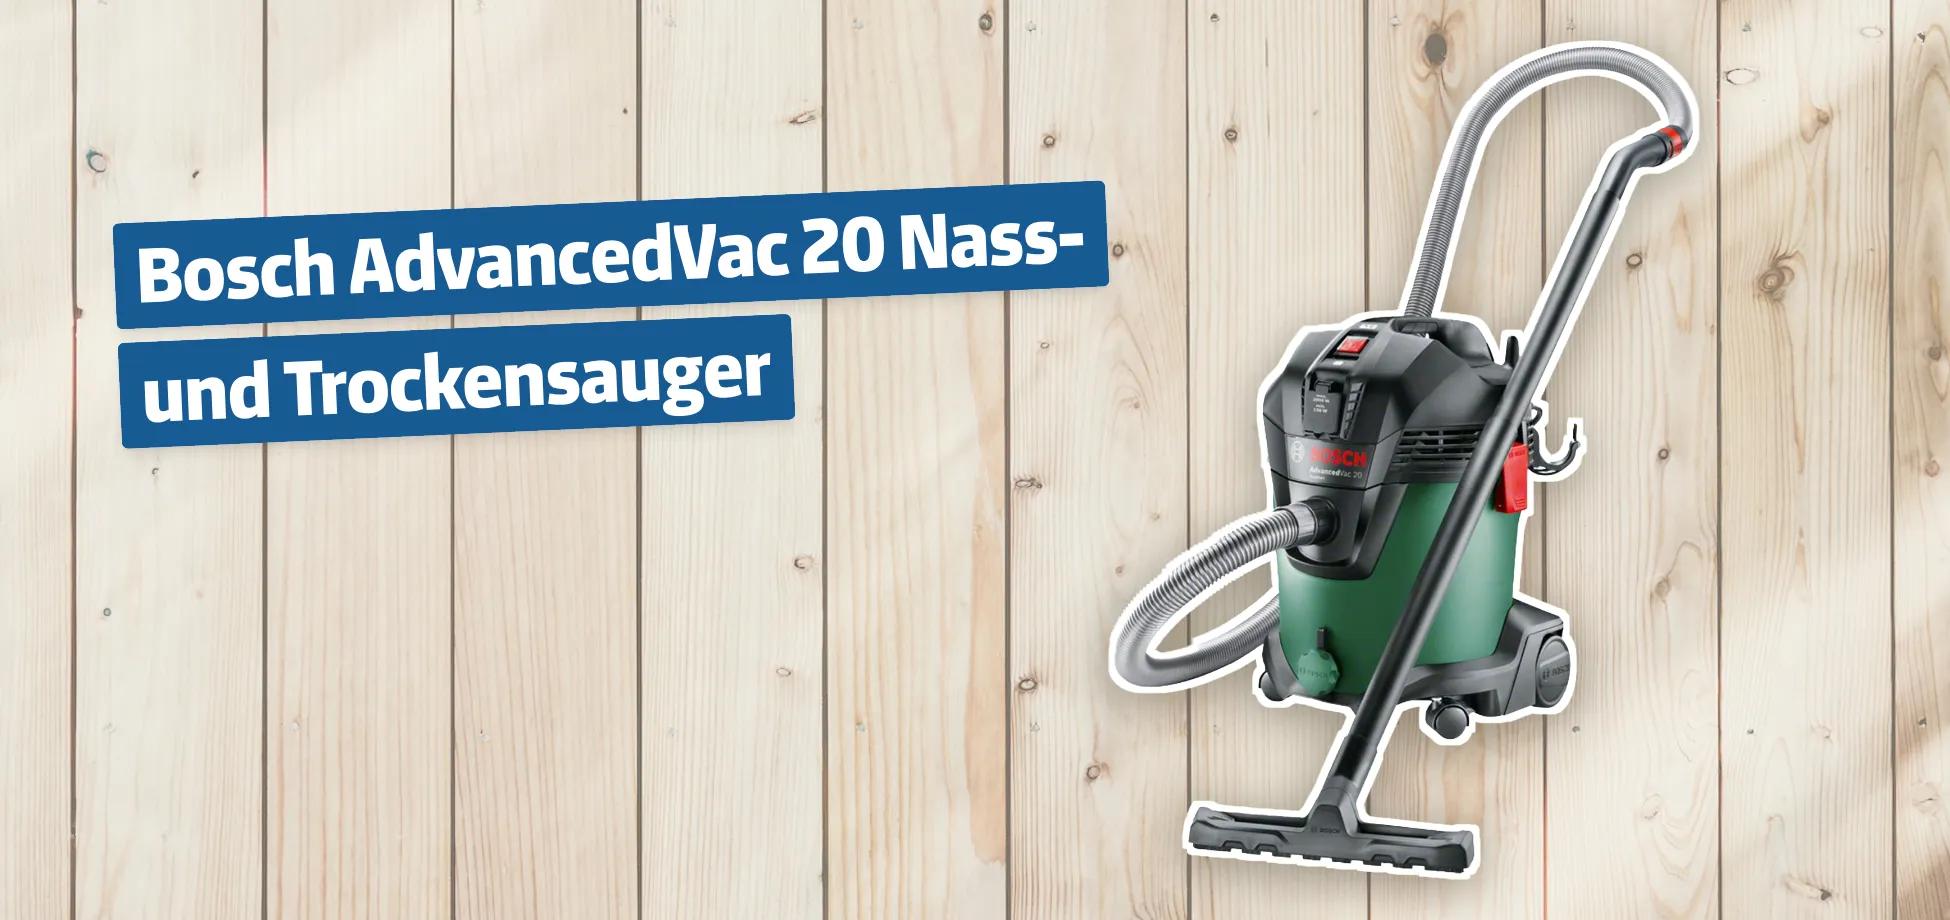 Bosch AdvancedVac 20 Nass- und Trockensauger